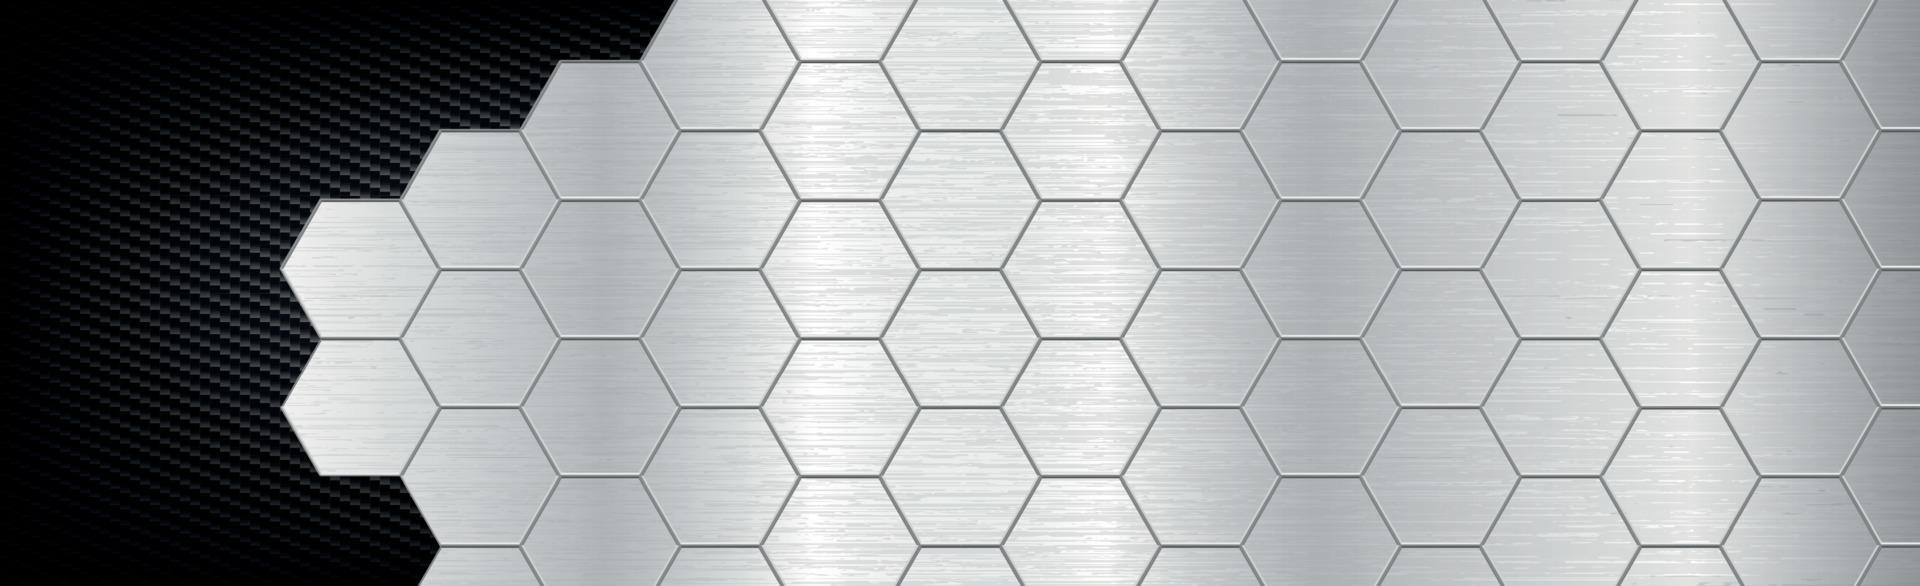 hexágonos de fundo abstrato de metal e fibra de carbono - ilustração vetorial vetor